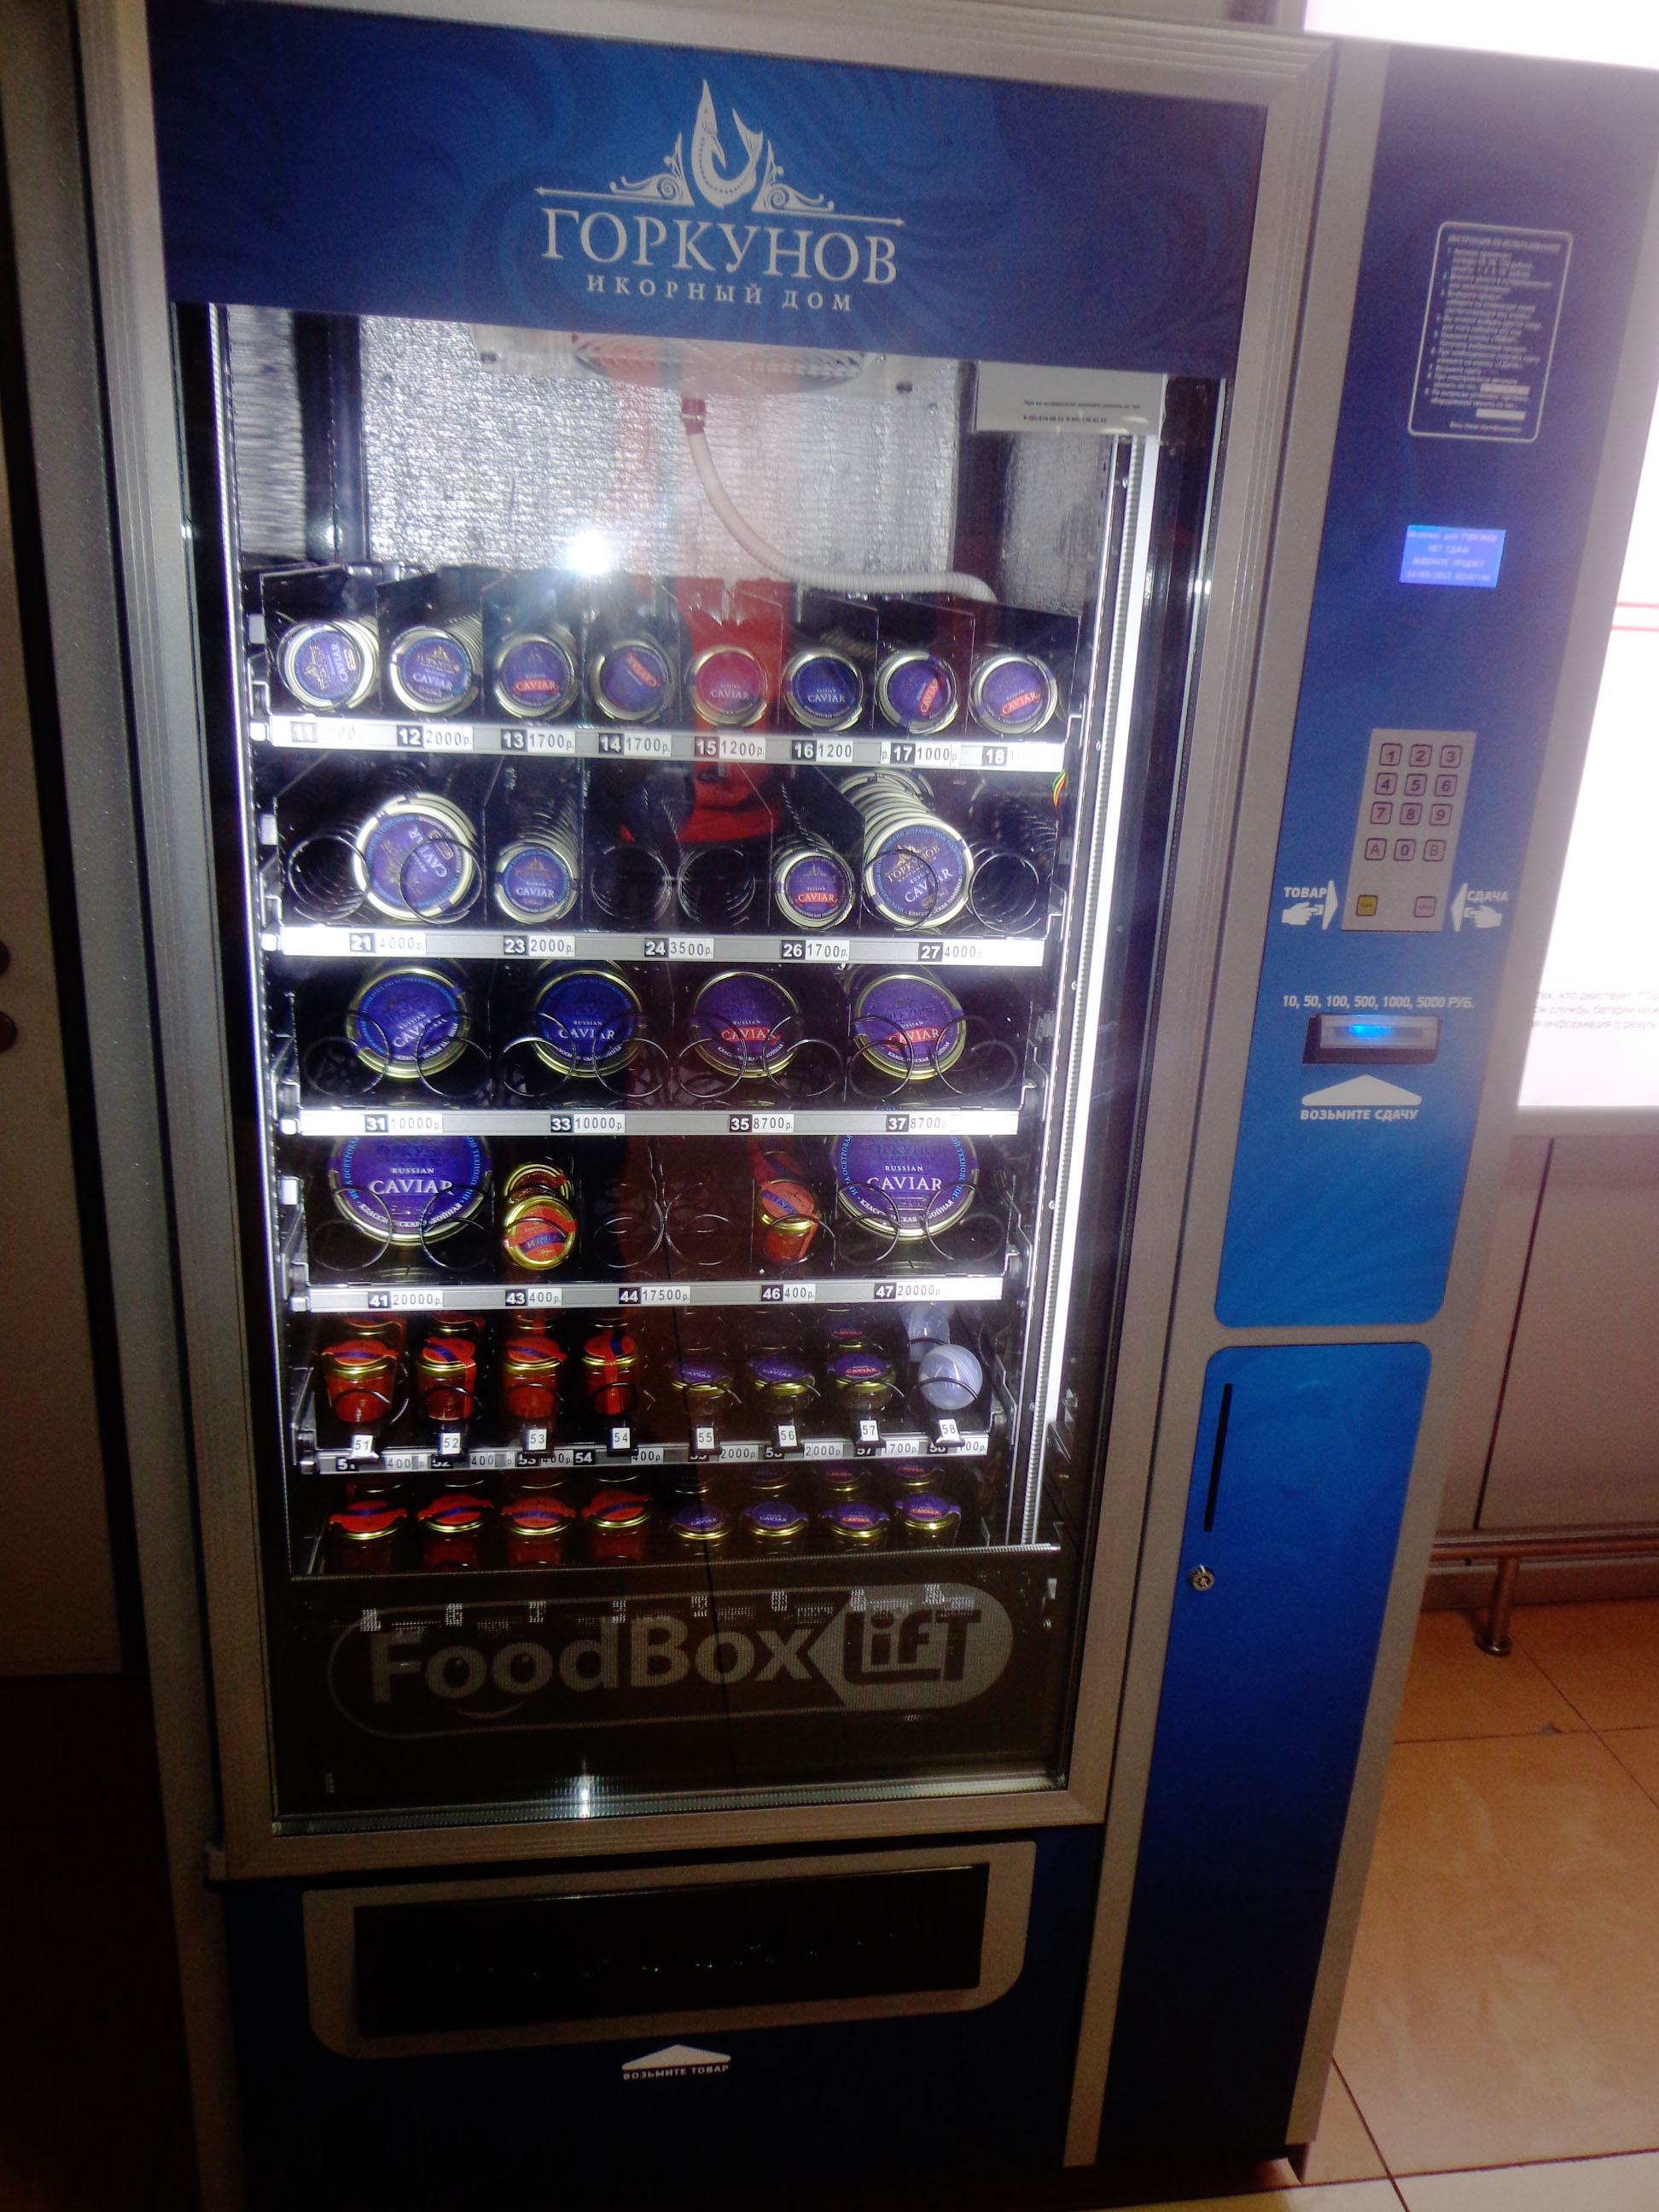 Moscow, Russia - Caviar Vending Machine